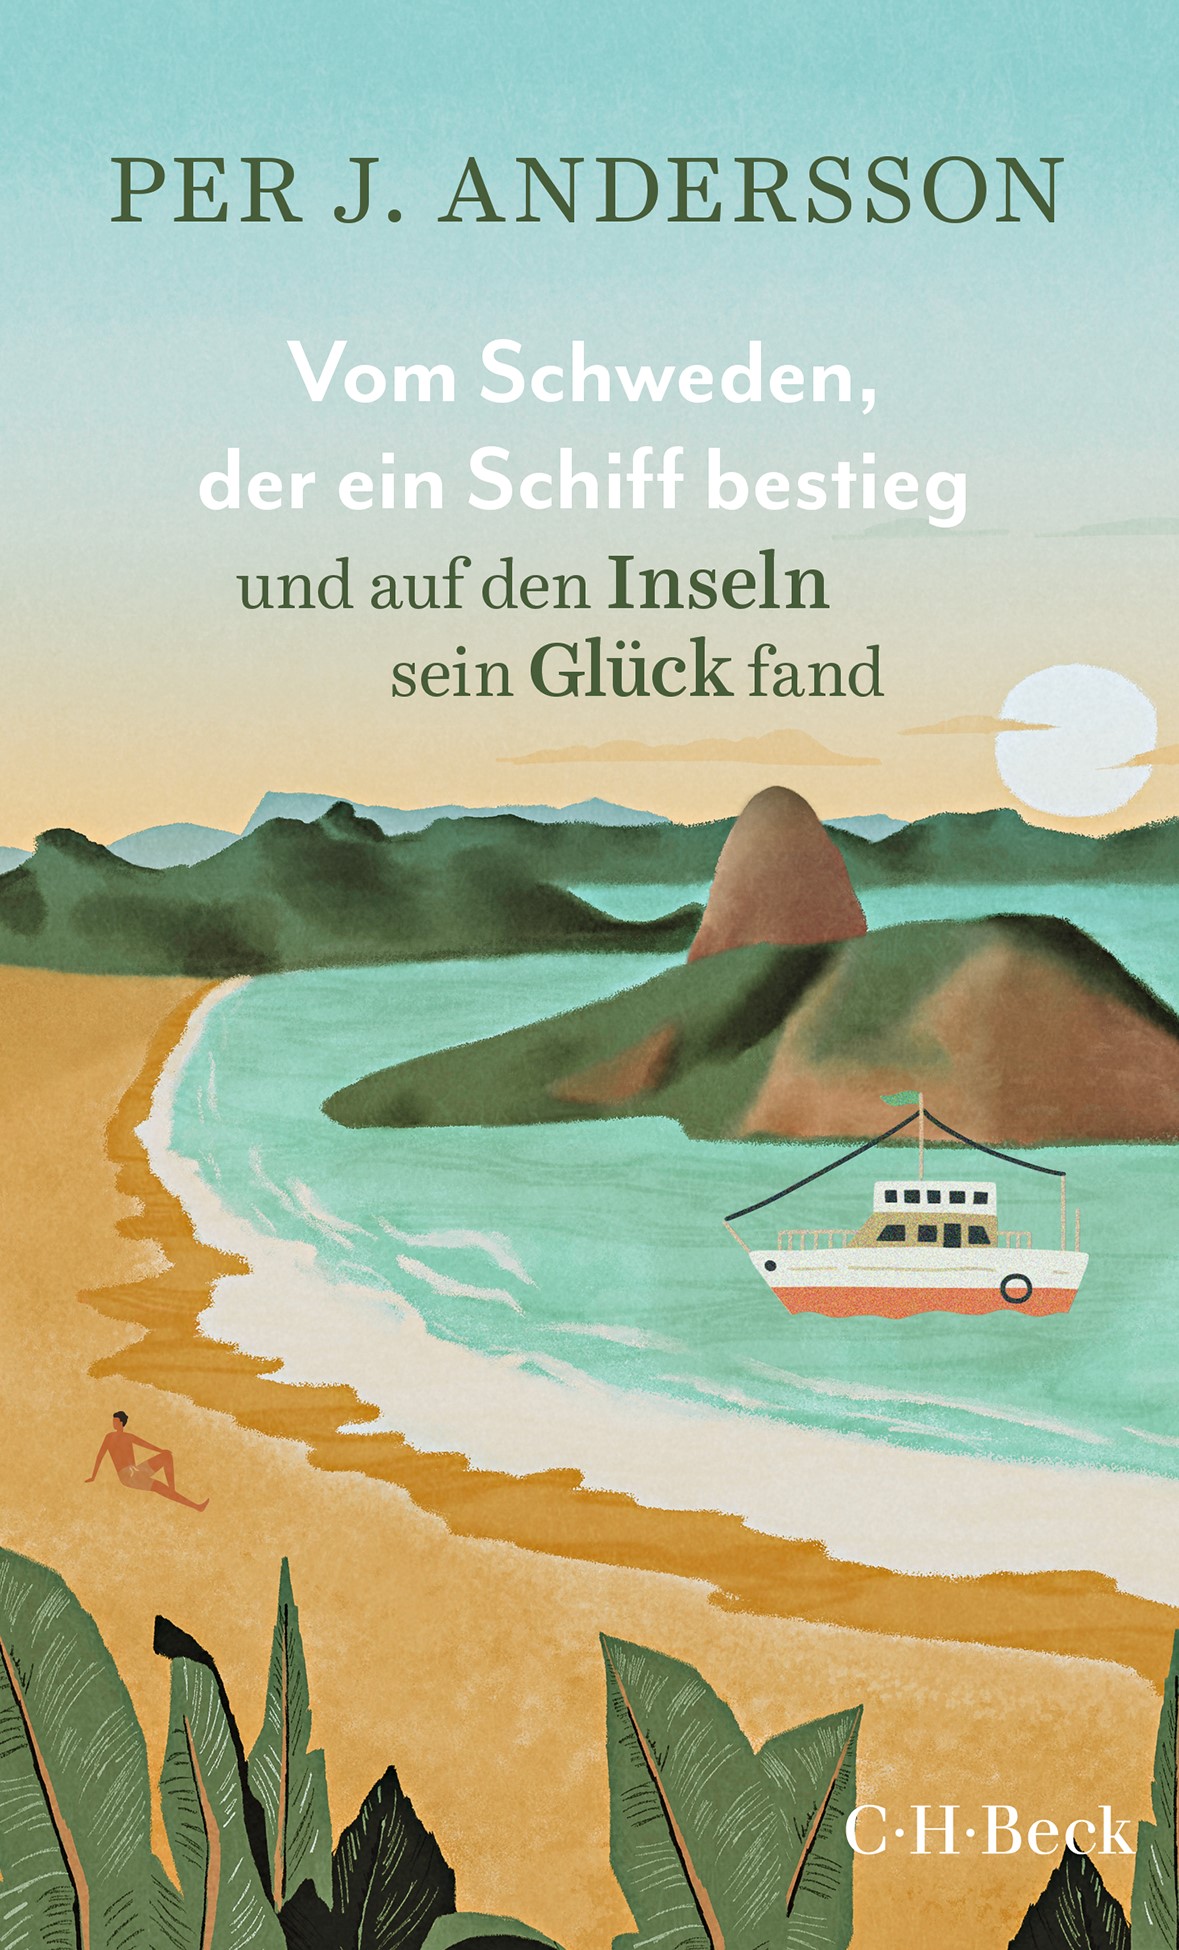 Cover: Andersson, Per J., Vom Schweden, der ein Schiff bestieg und auf den Inseln sein Glück fand